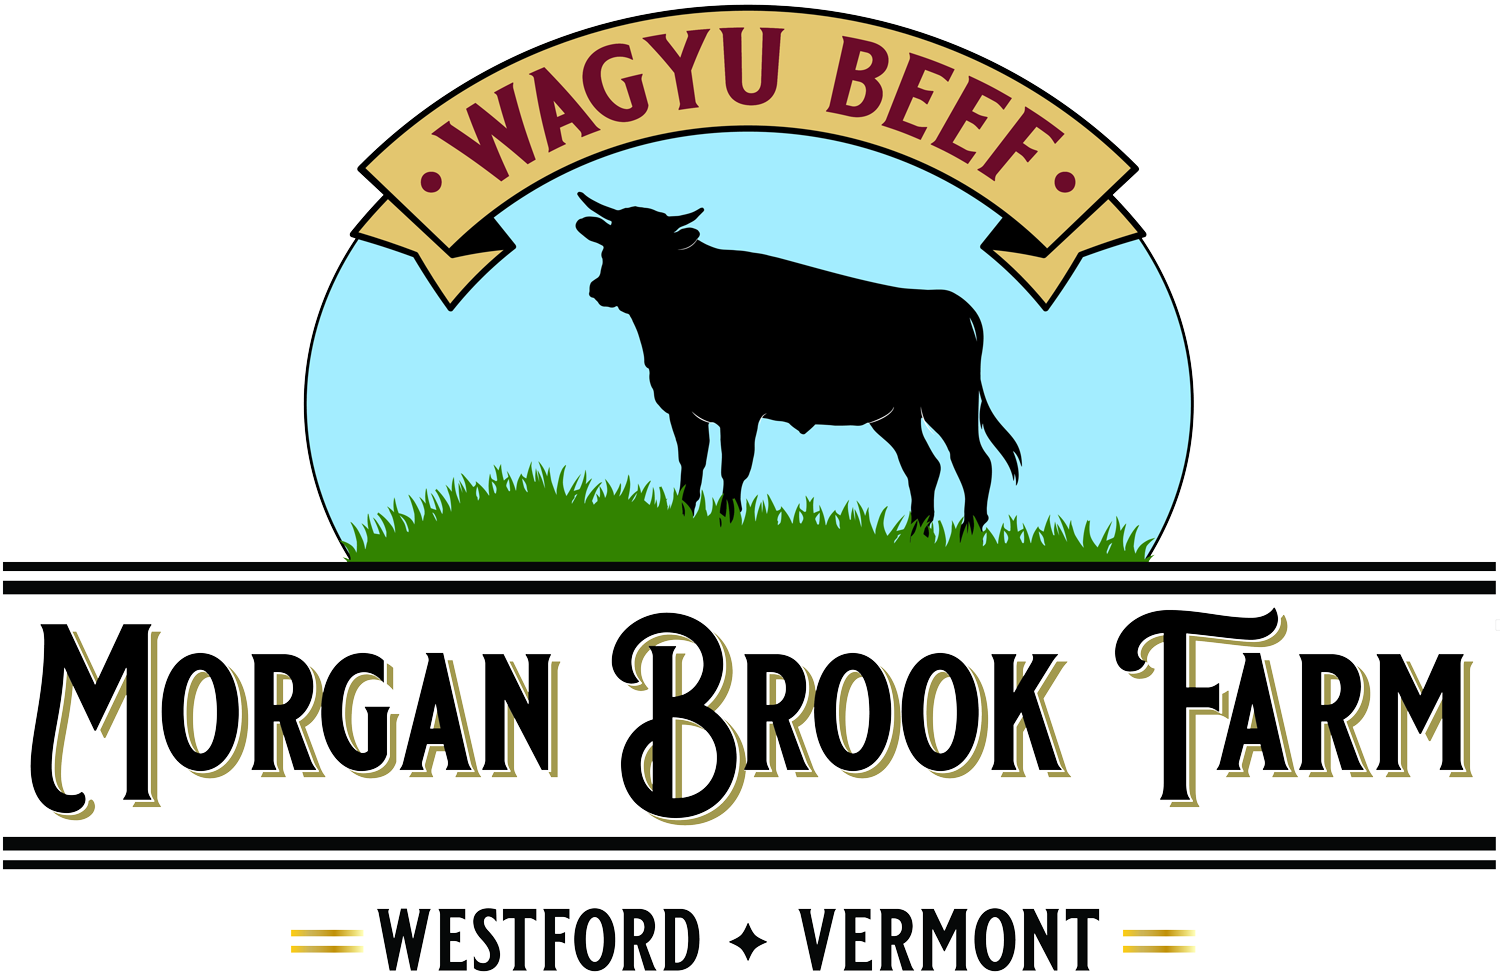 Morgan Brook Farm LLC